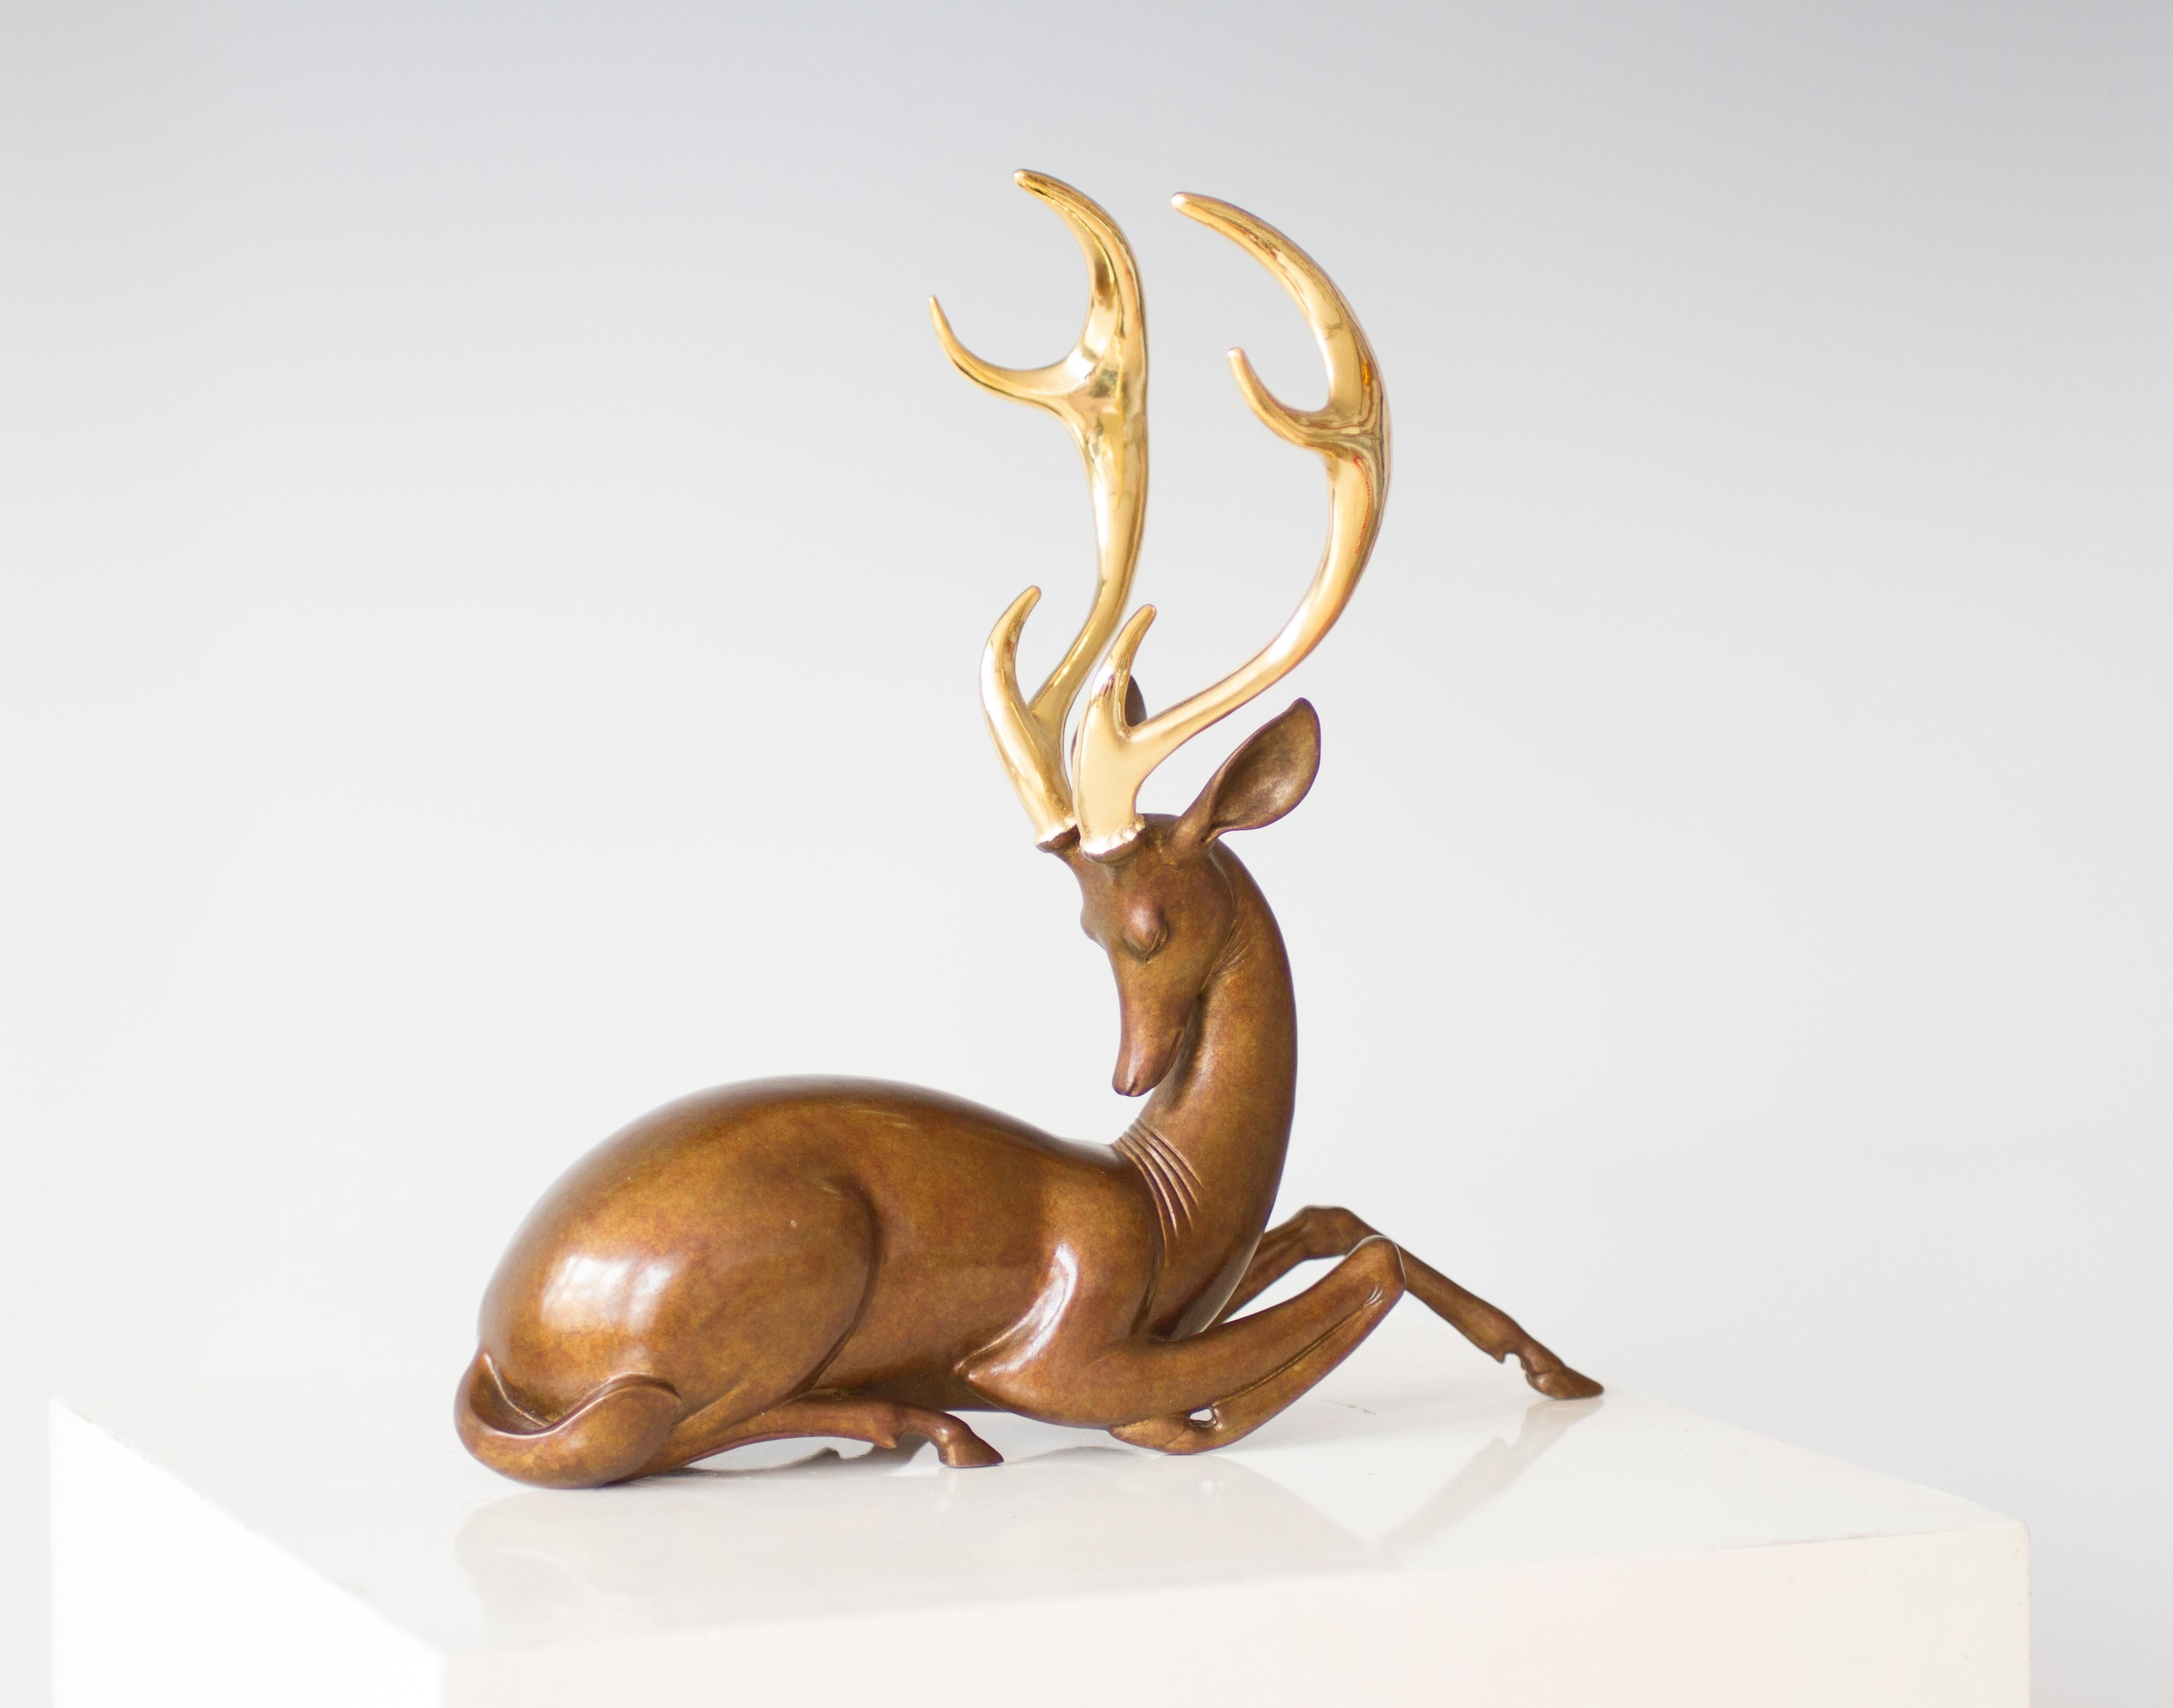 Contemporary Animal Sculpture by Wang Dapeng- Sleeplessness - Gold Figurative Sculpture by Wang Dapeng 